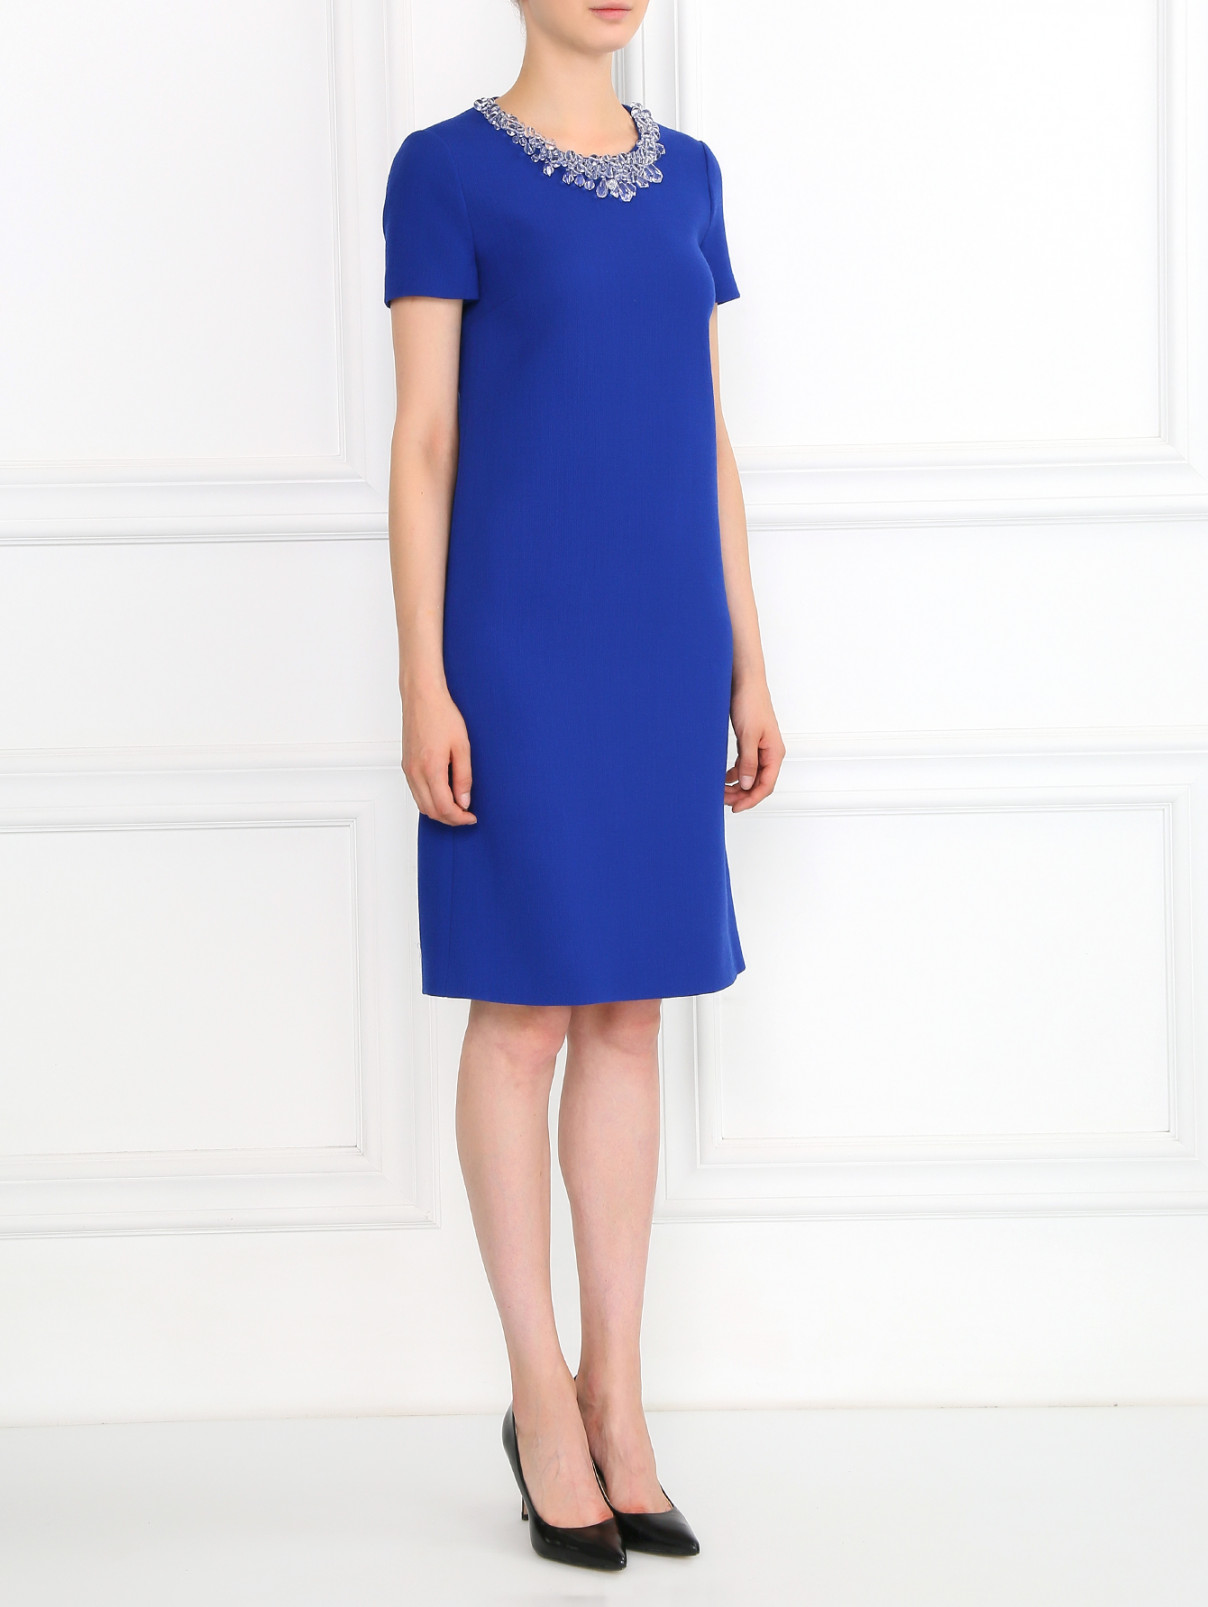 Платье прямого фасона из шерсти декорированное кристаллами Moschino Boutique  –  Модель Общий вид  – Цвет:  Синий